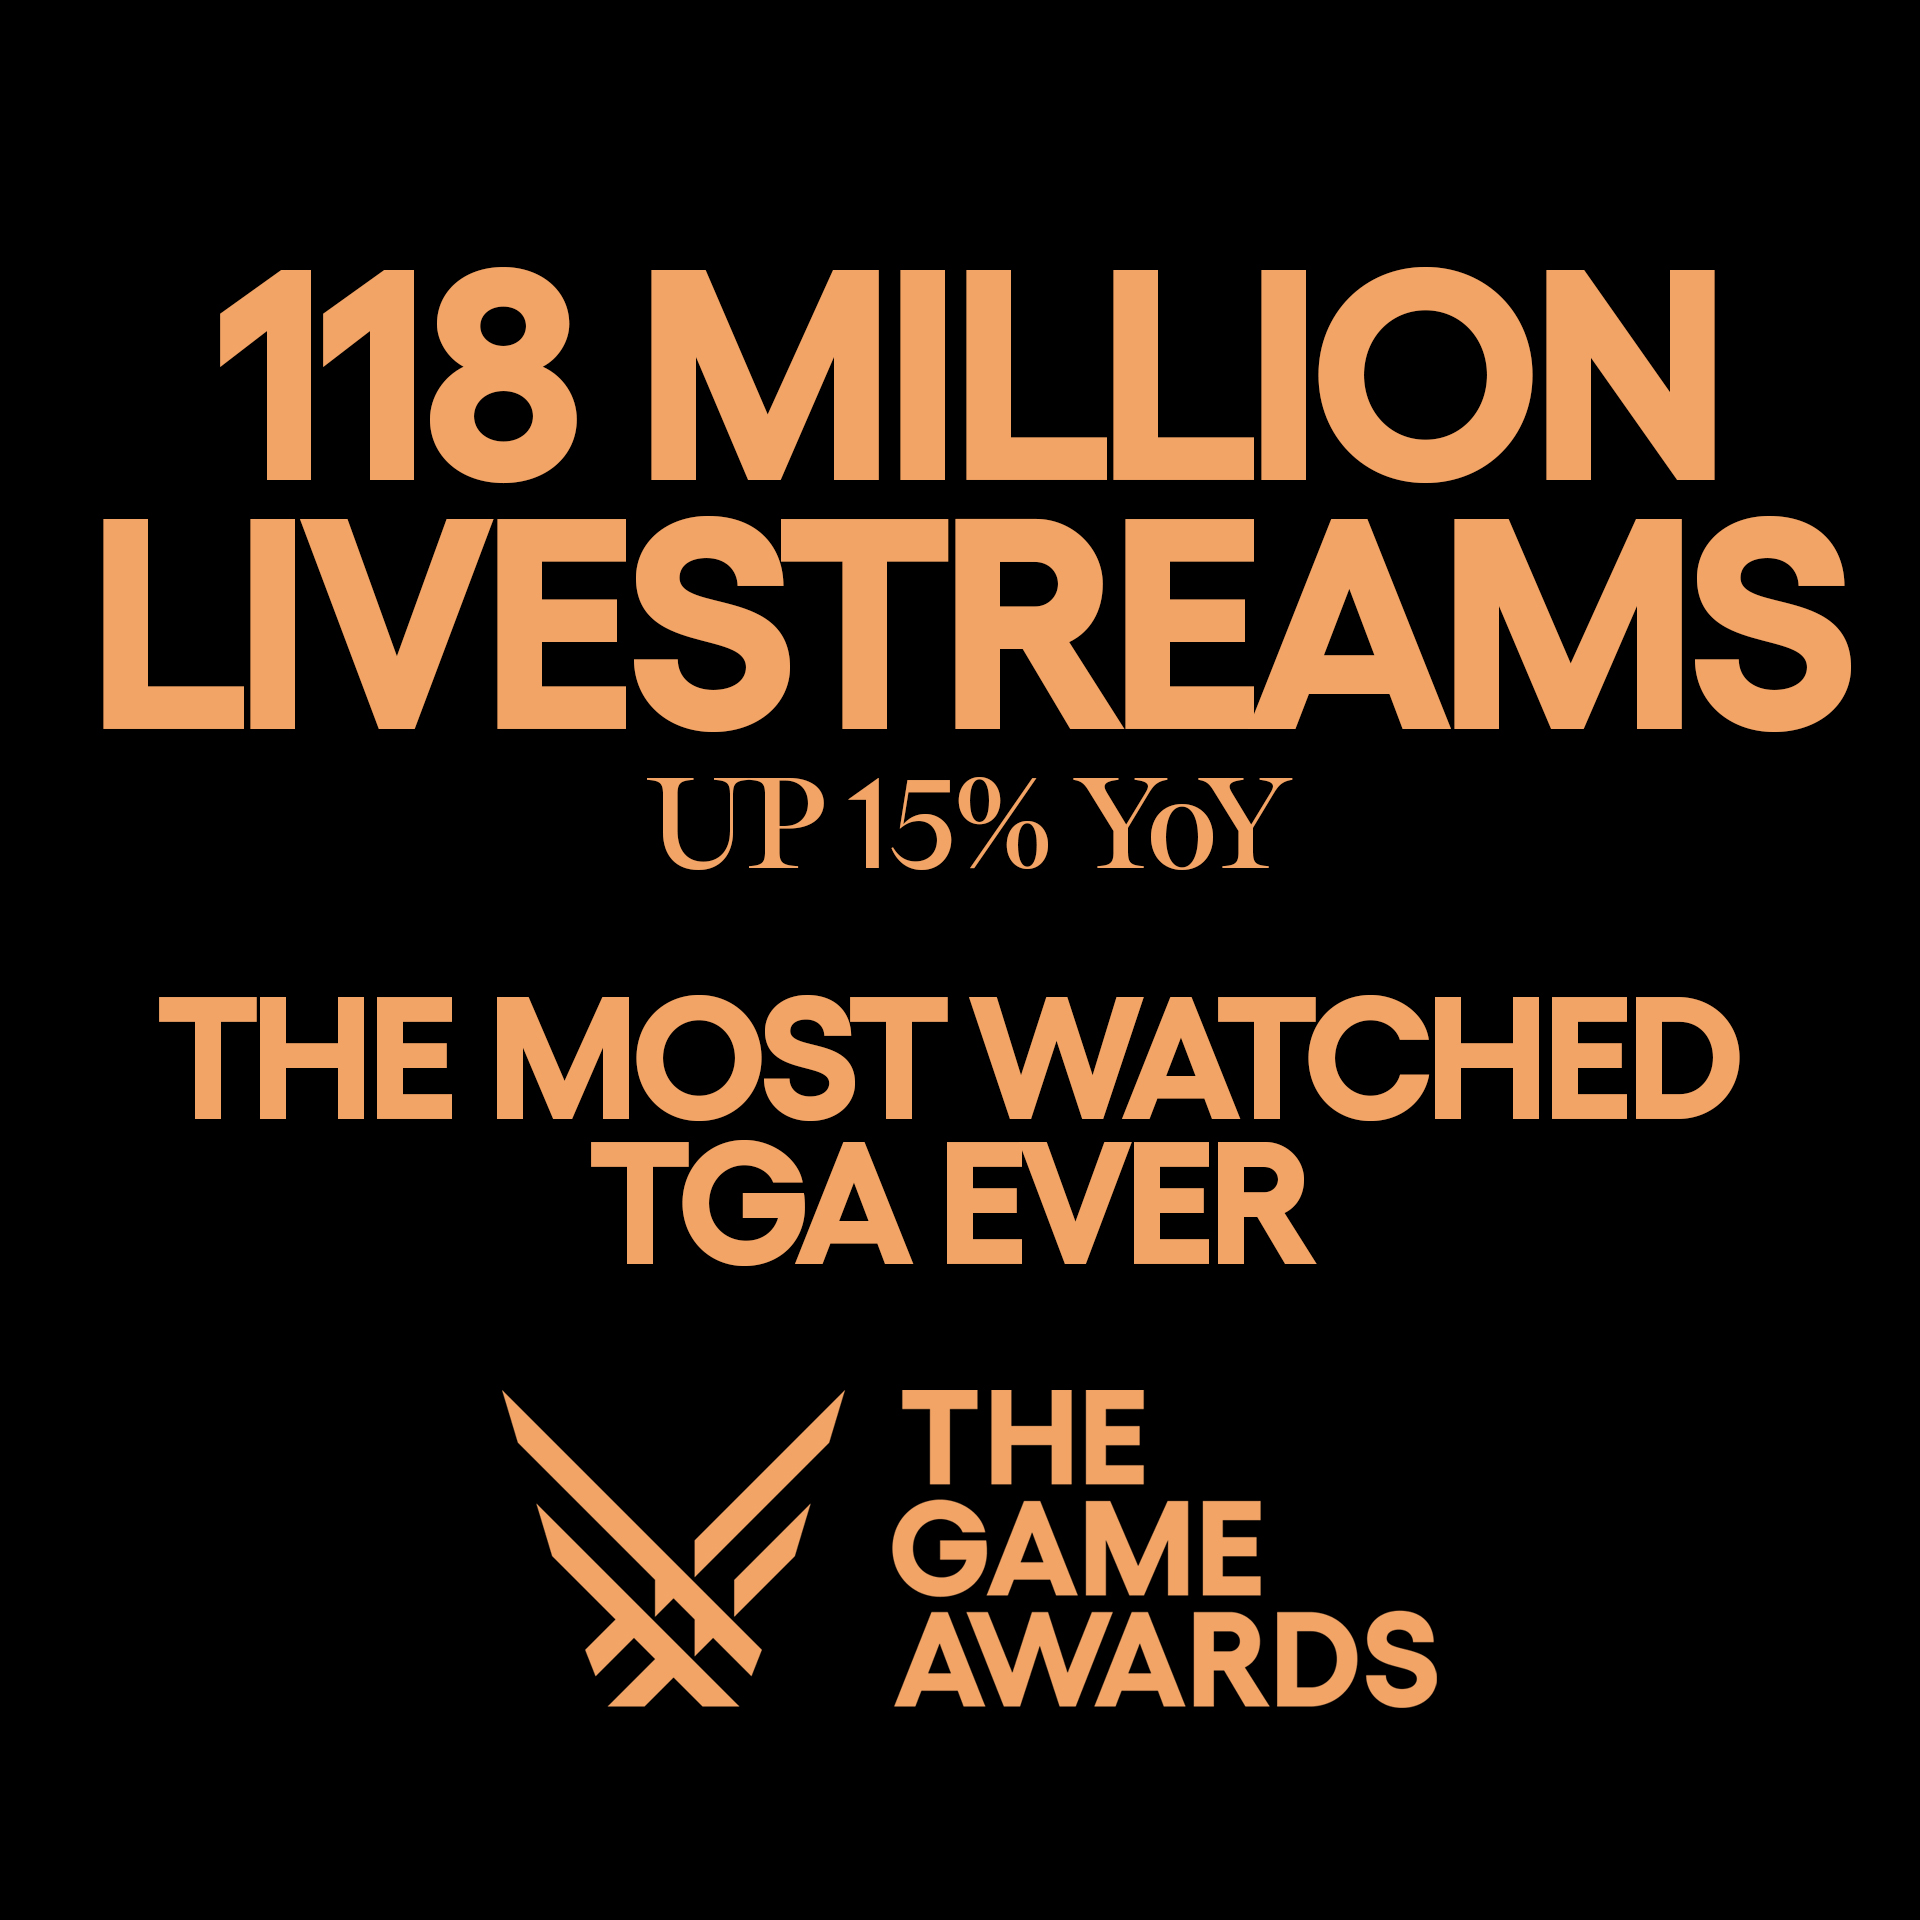 The Game Awards 2023 поставила рекорд по просмотрам - более 118 млн: с сайта NEWXBOXONE.RU